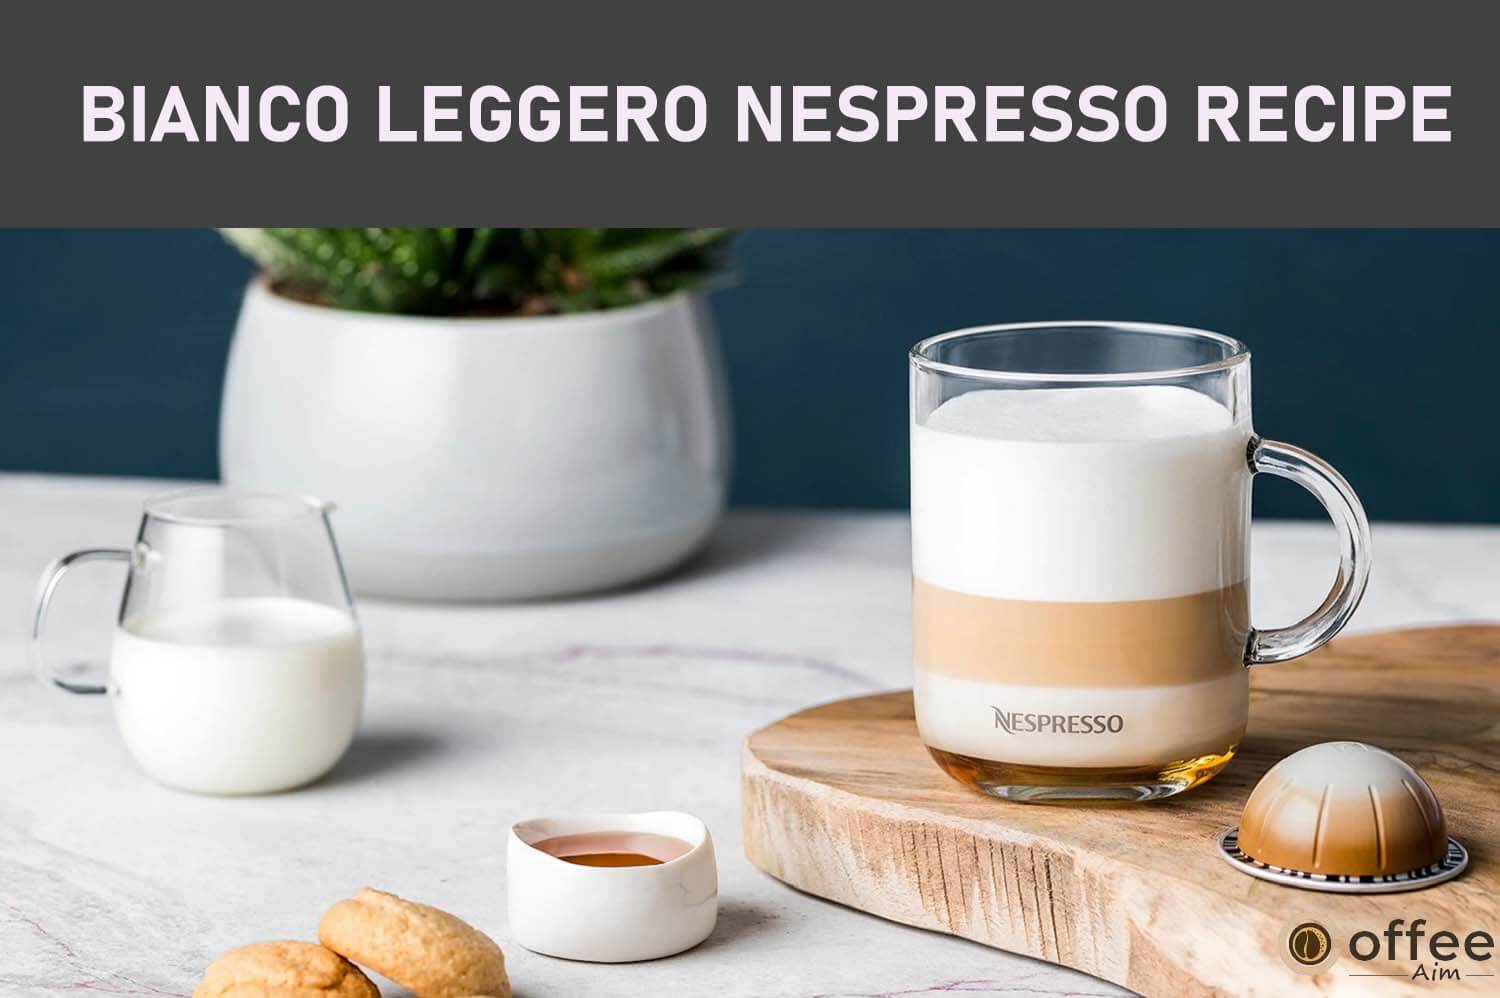 Featured image for the article "Bianco Leggero Nespresso Recipe"